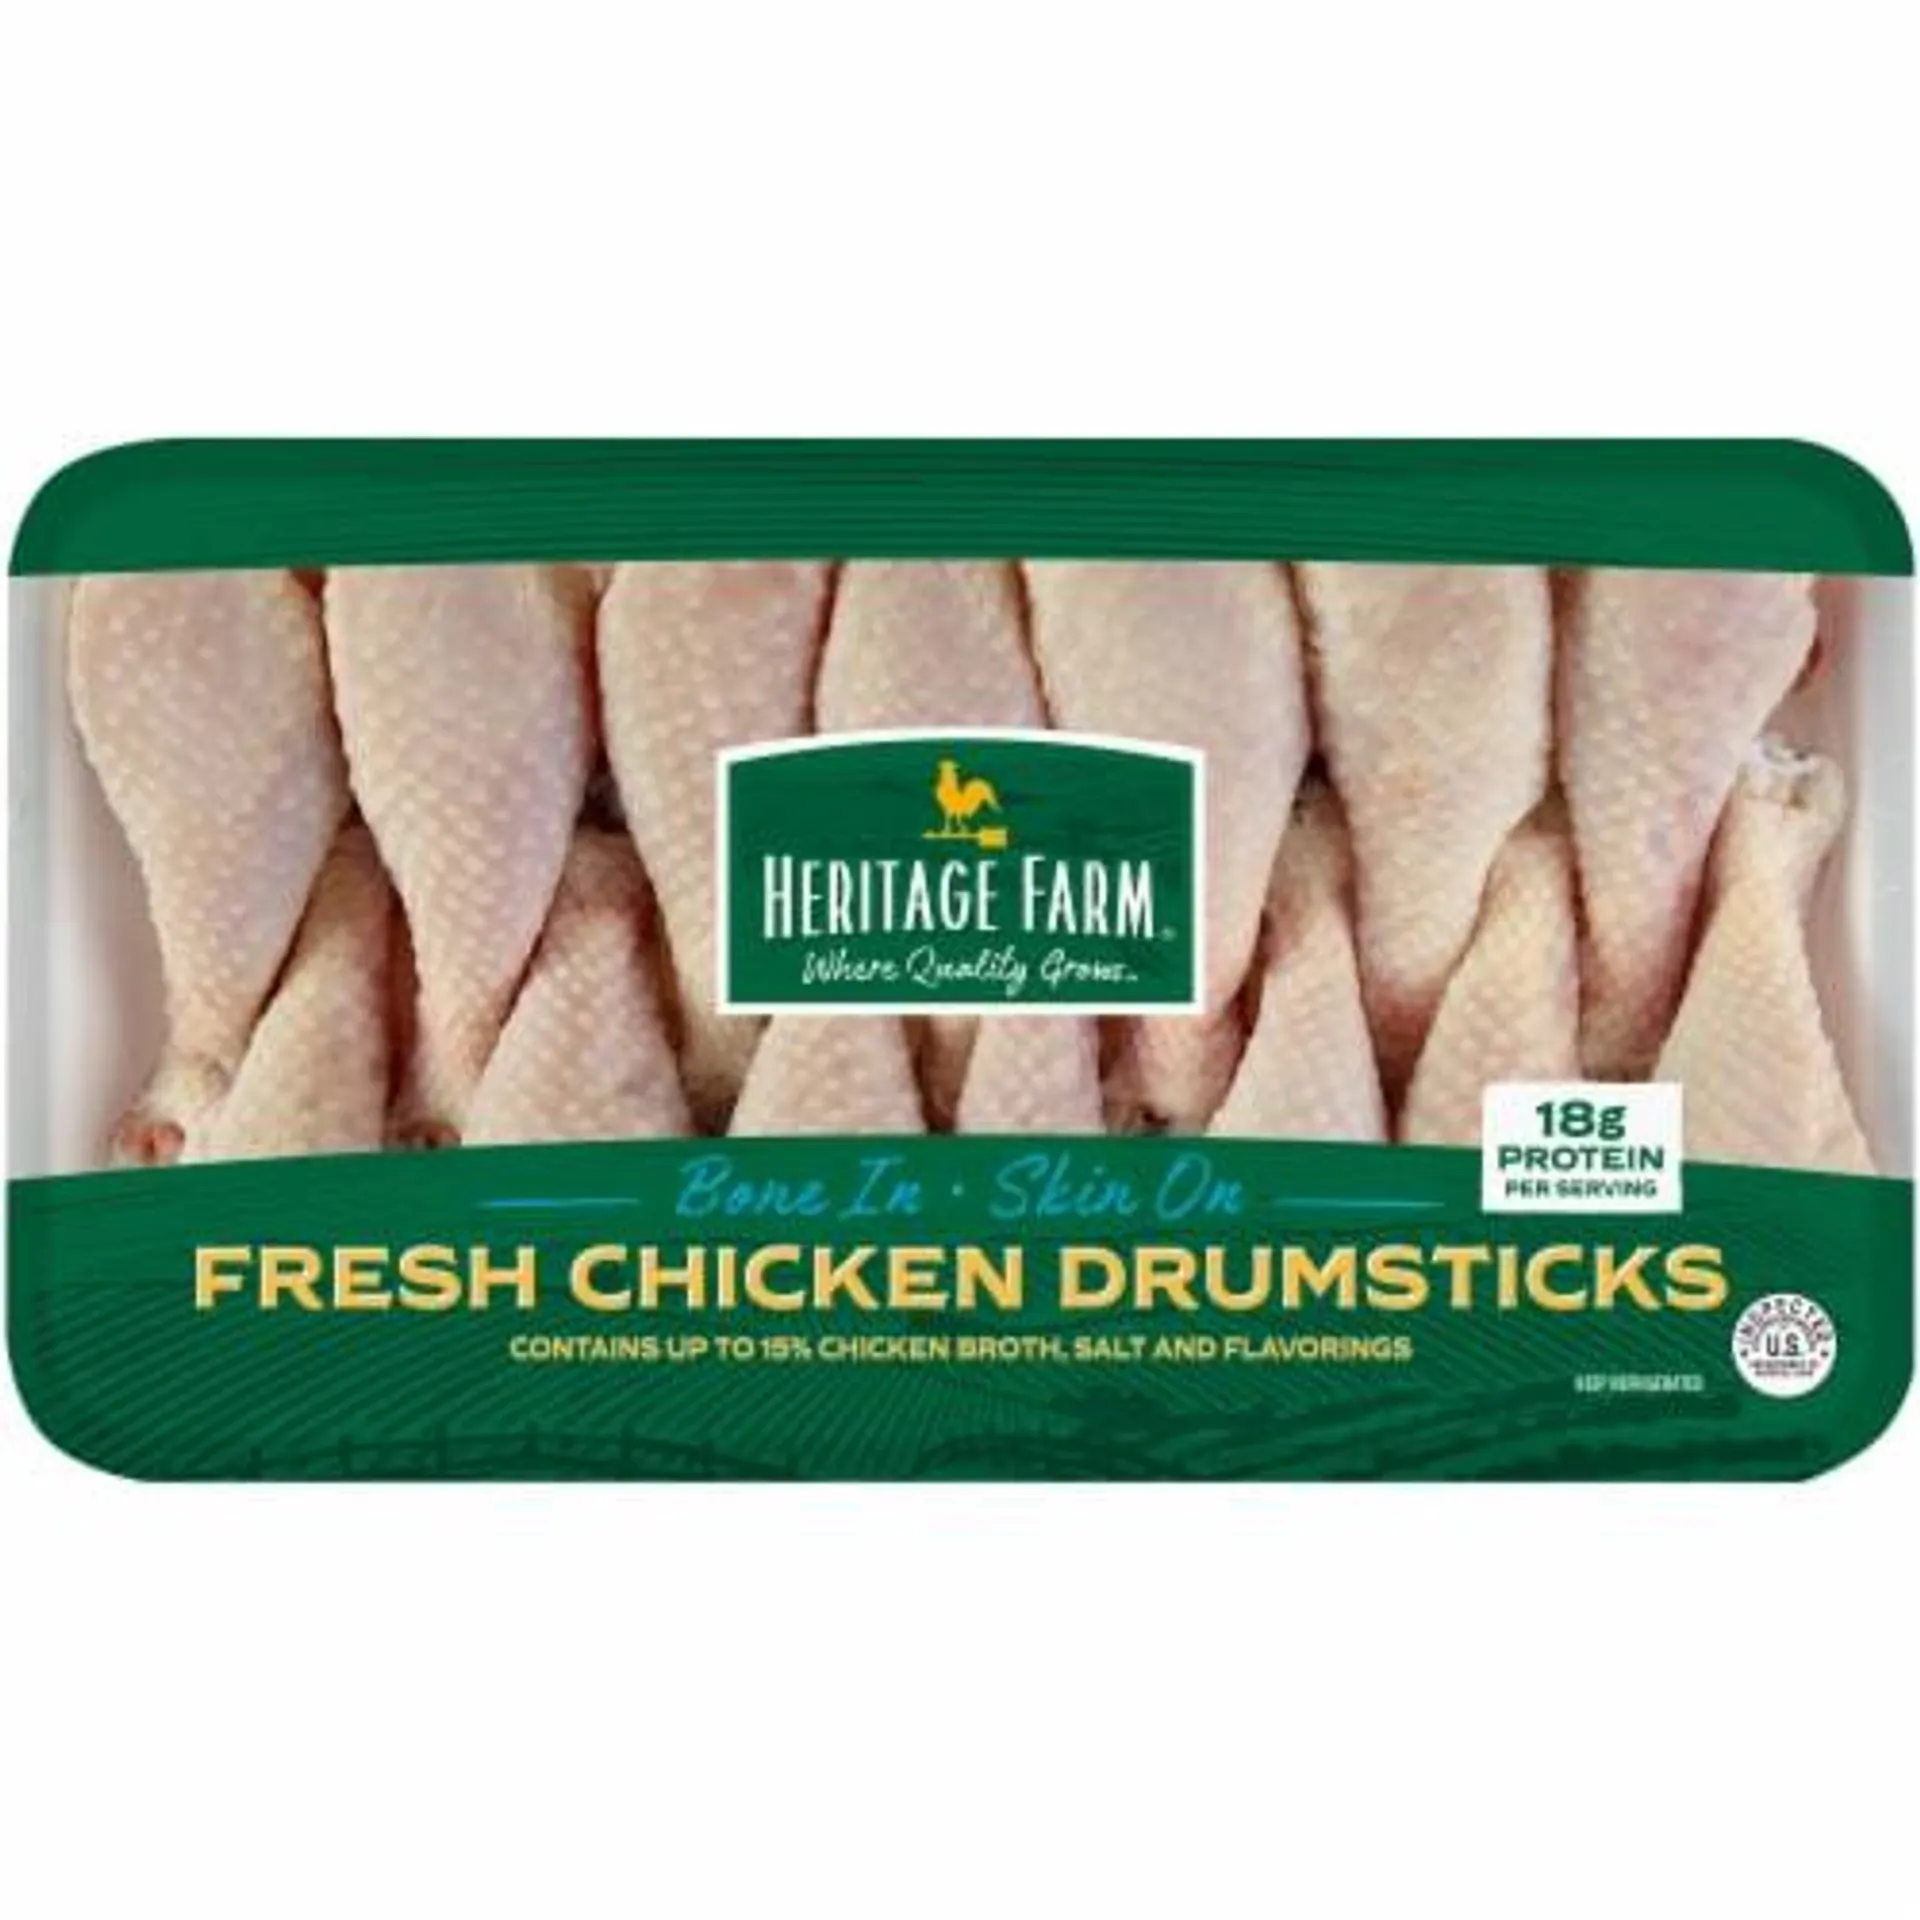 Heritage Farm® Bone In & Skin On Chicken Drumsticks